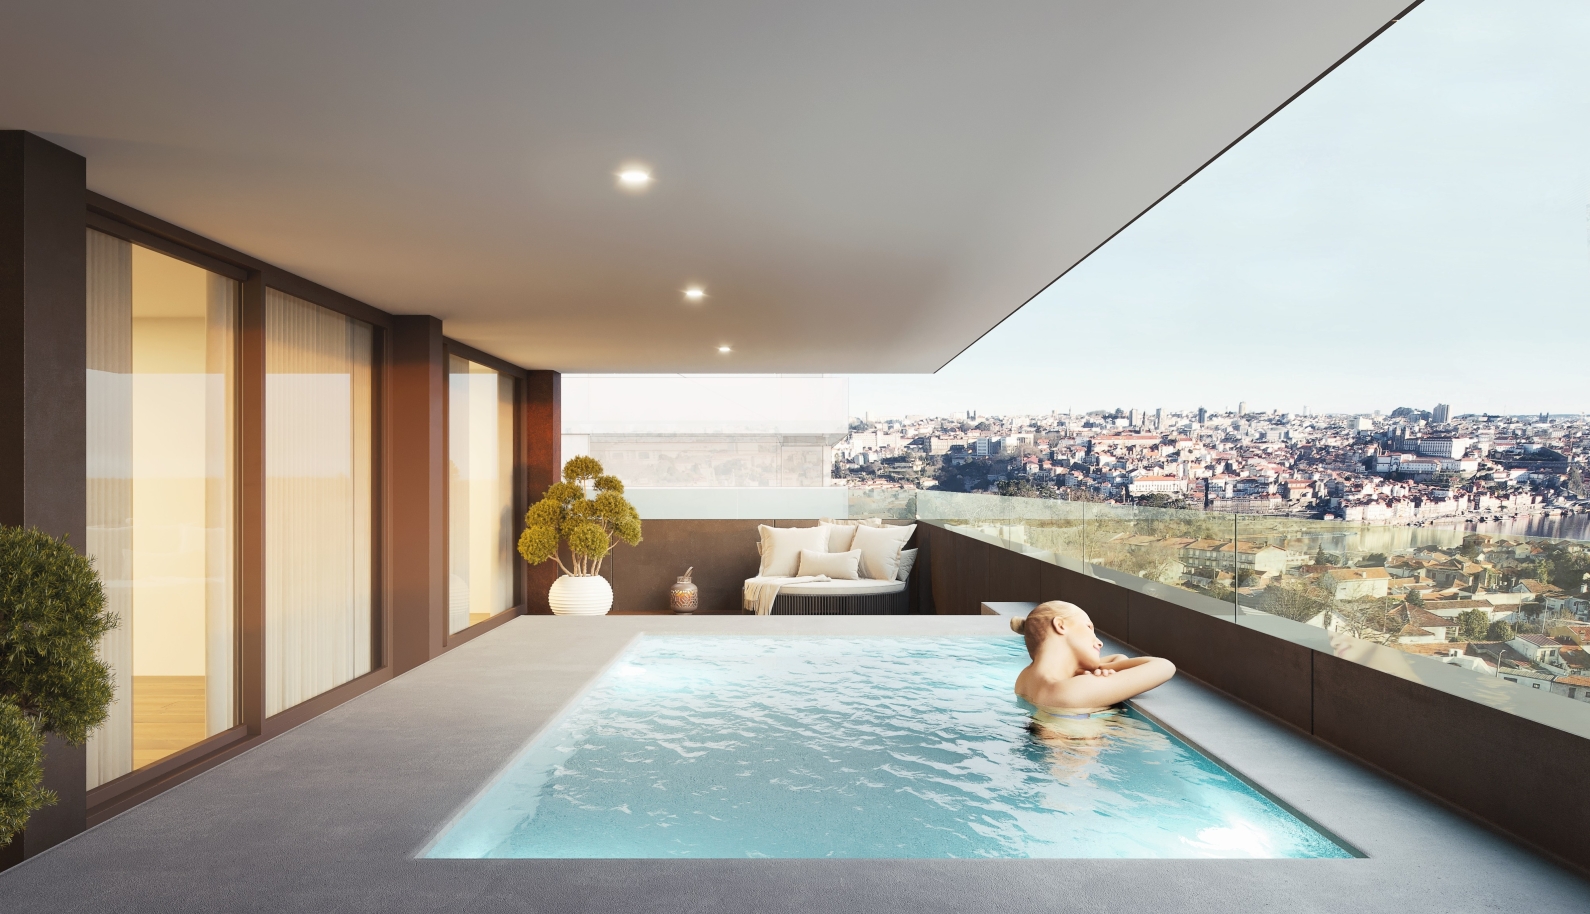 Apartamento novo com piscina, para venda, em V. N. Gaia, Porto, Portugal_234390